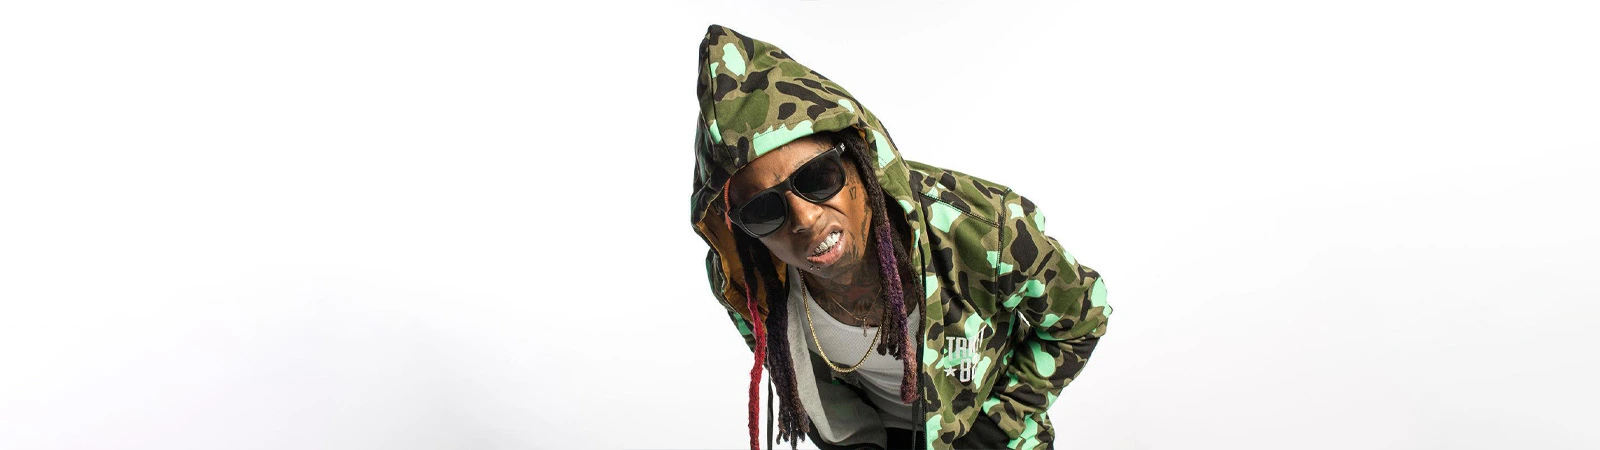 9. Lil Wayne 175 million United States